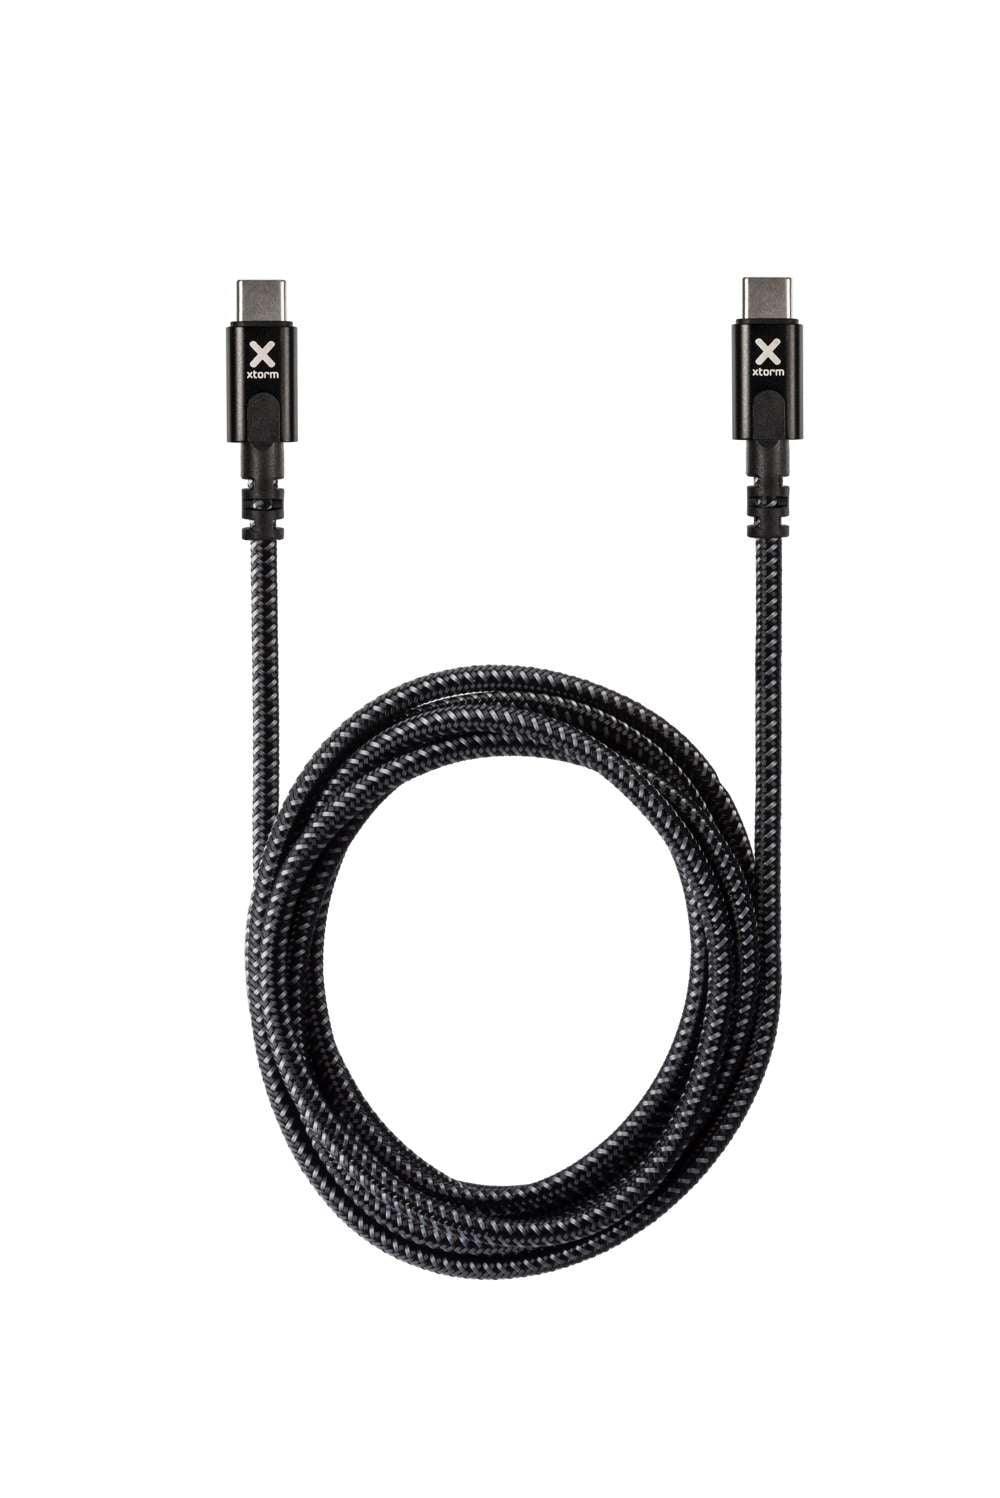 Xtorm Original USB-C PD 3.1 kabel 240W - 2 meter